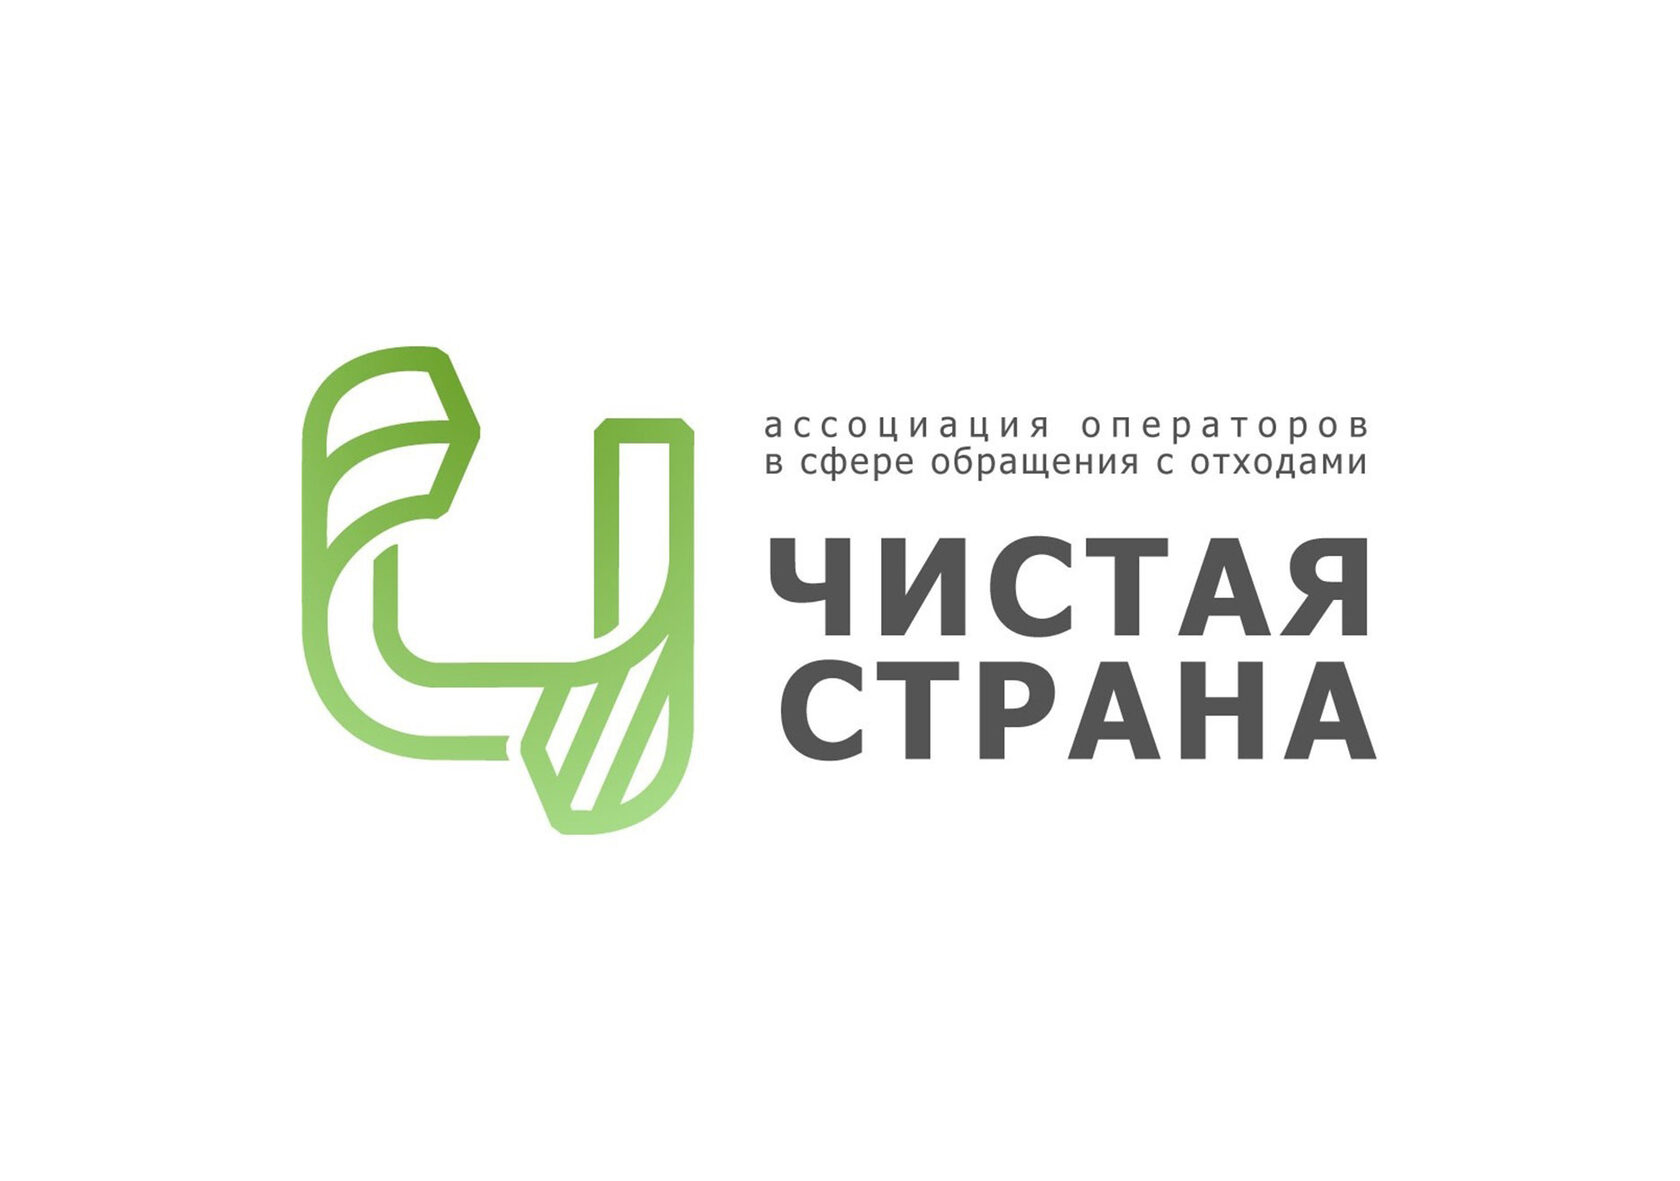 VII Съезд региональных операторов в сфере обращения с ТКО пройдет в Подмосковье 17 – 19 мая - фото 1